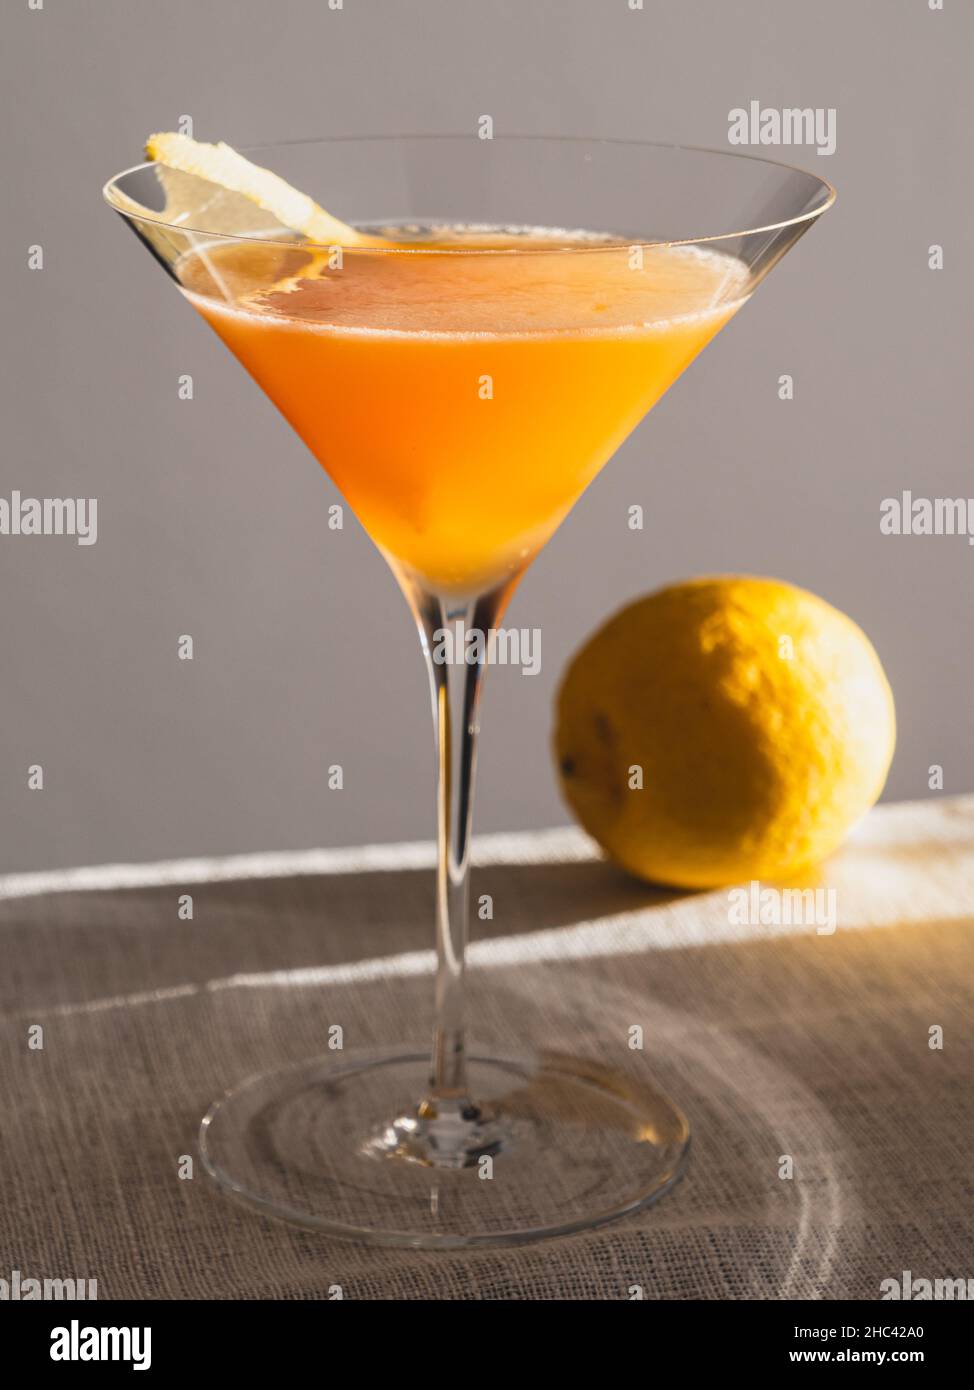 Sidecar ou entre les feuilles Citrus cocktail avec citron et tourner dans un verre Banque D'Images